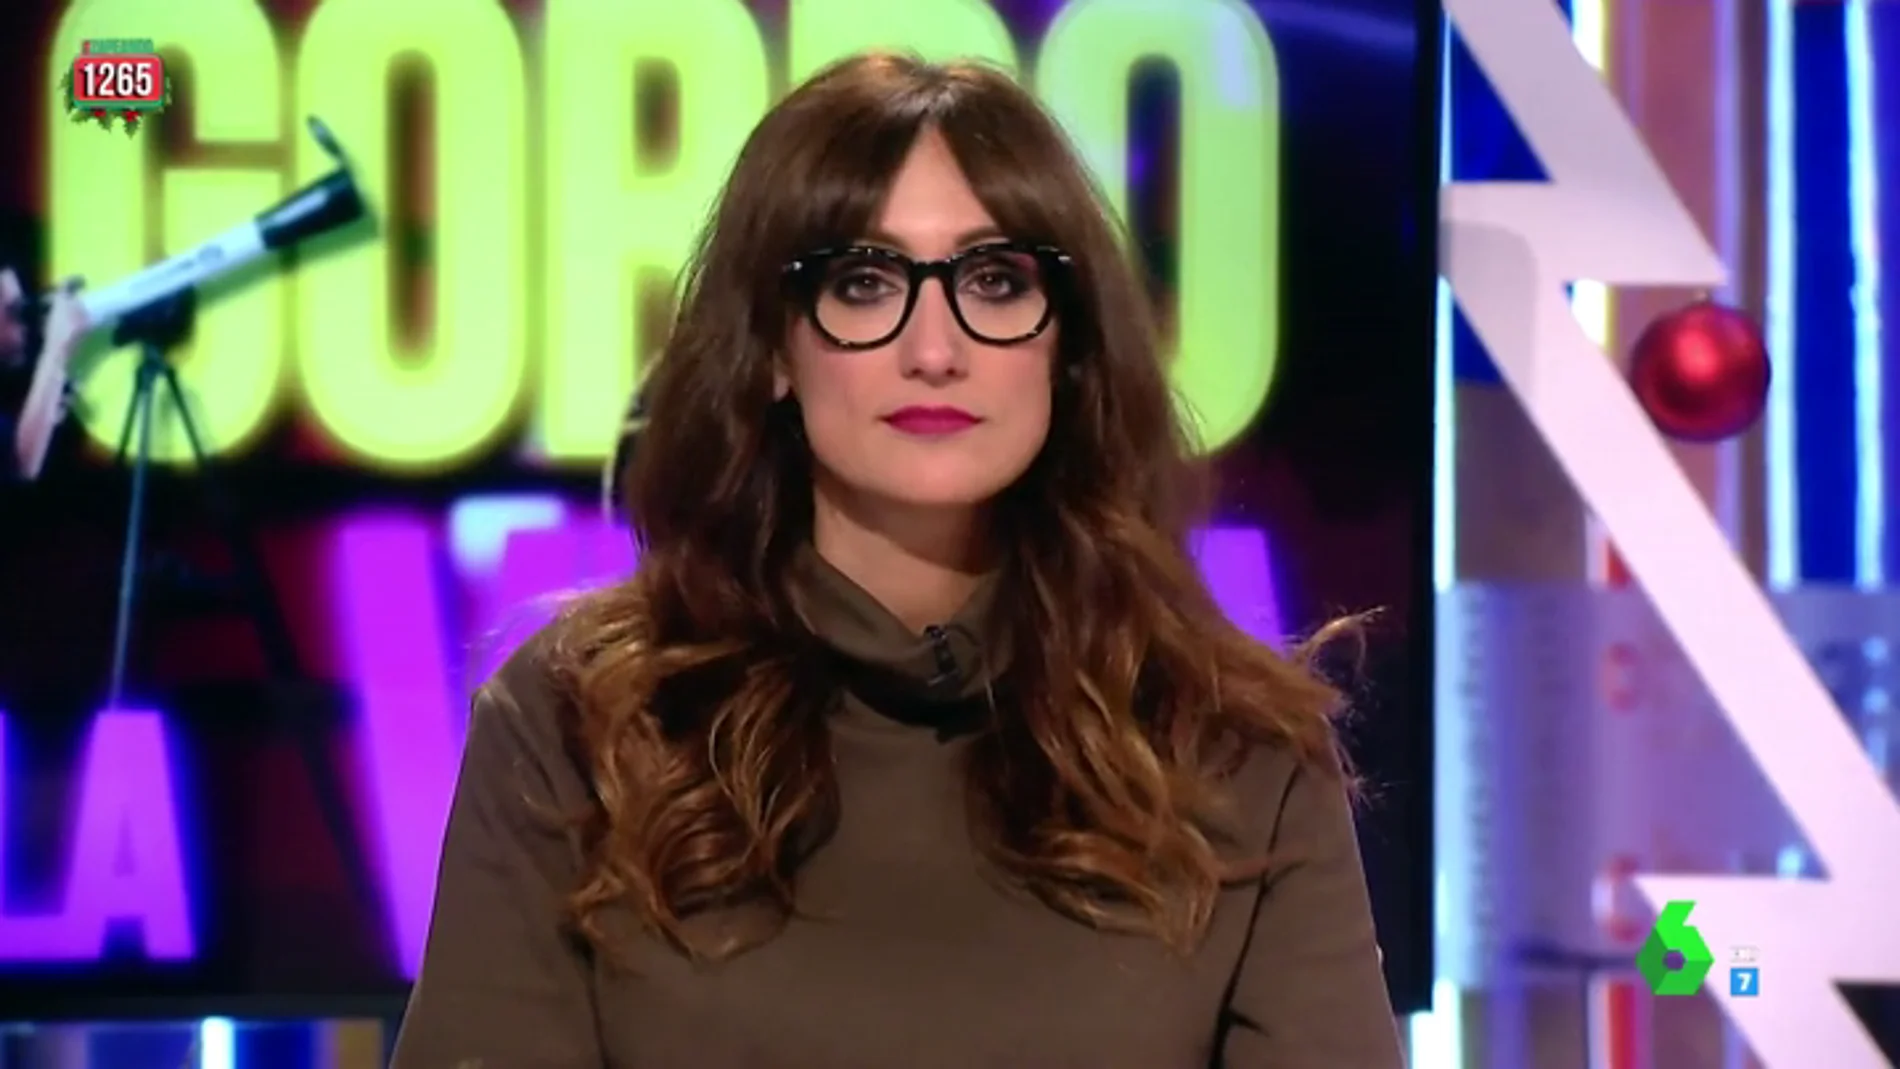 El 'zasca' de Ana Morgade a Cristina Pedroche: "Hay más probabilidades de que Pedroche te cuente un chiste bueno que de que te toque el gordo"